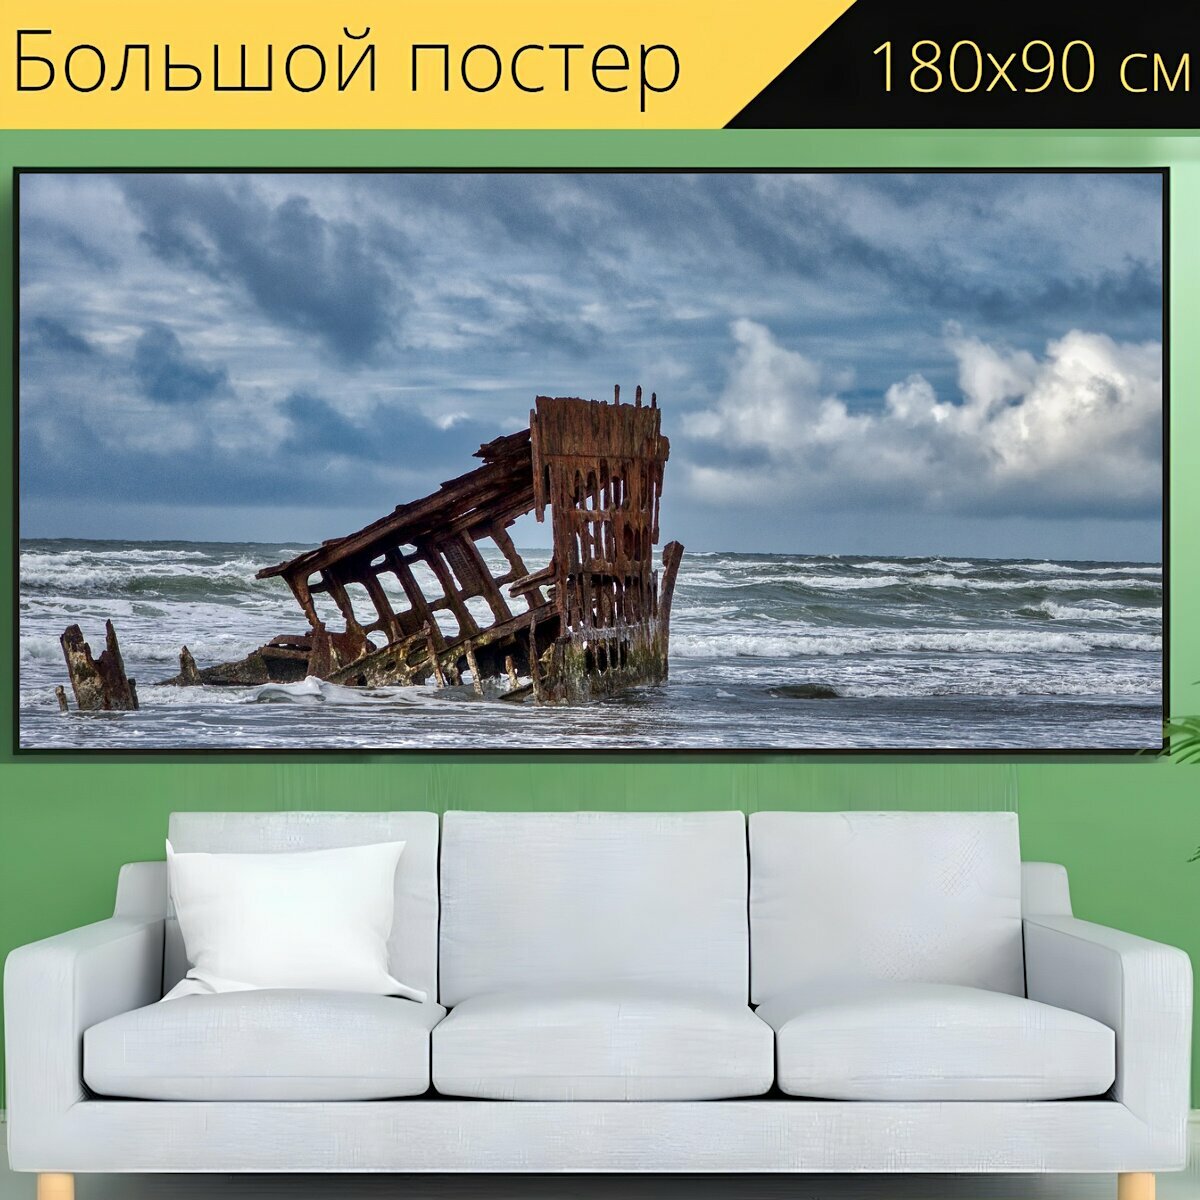 Большой постер "Кораблекрушение, море, морской берег" 180 x 90 см. для интерьера